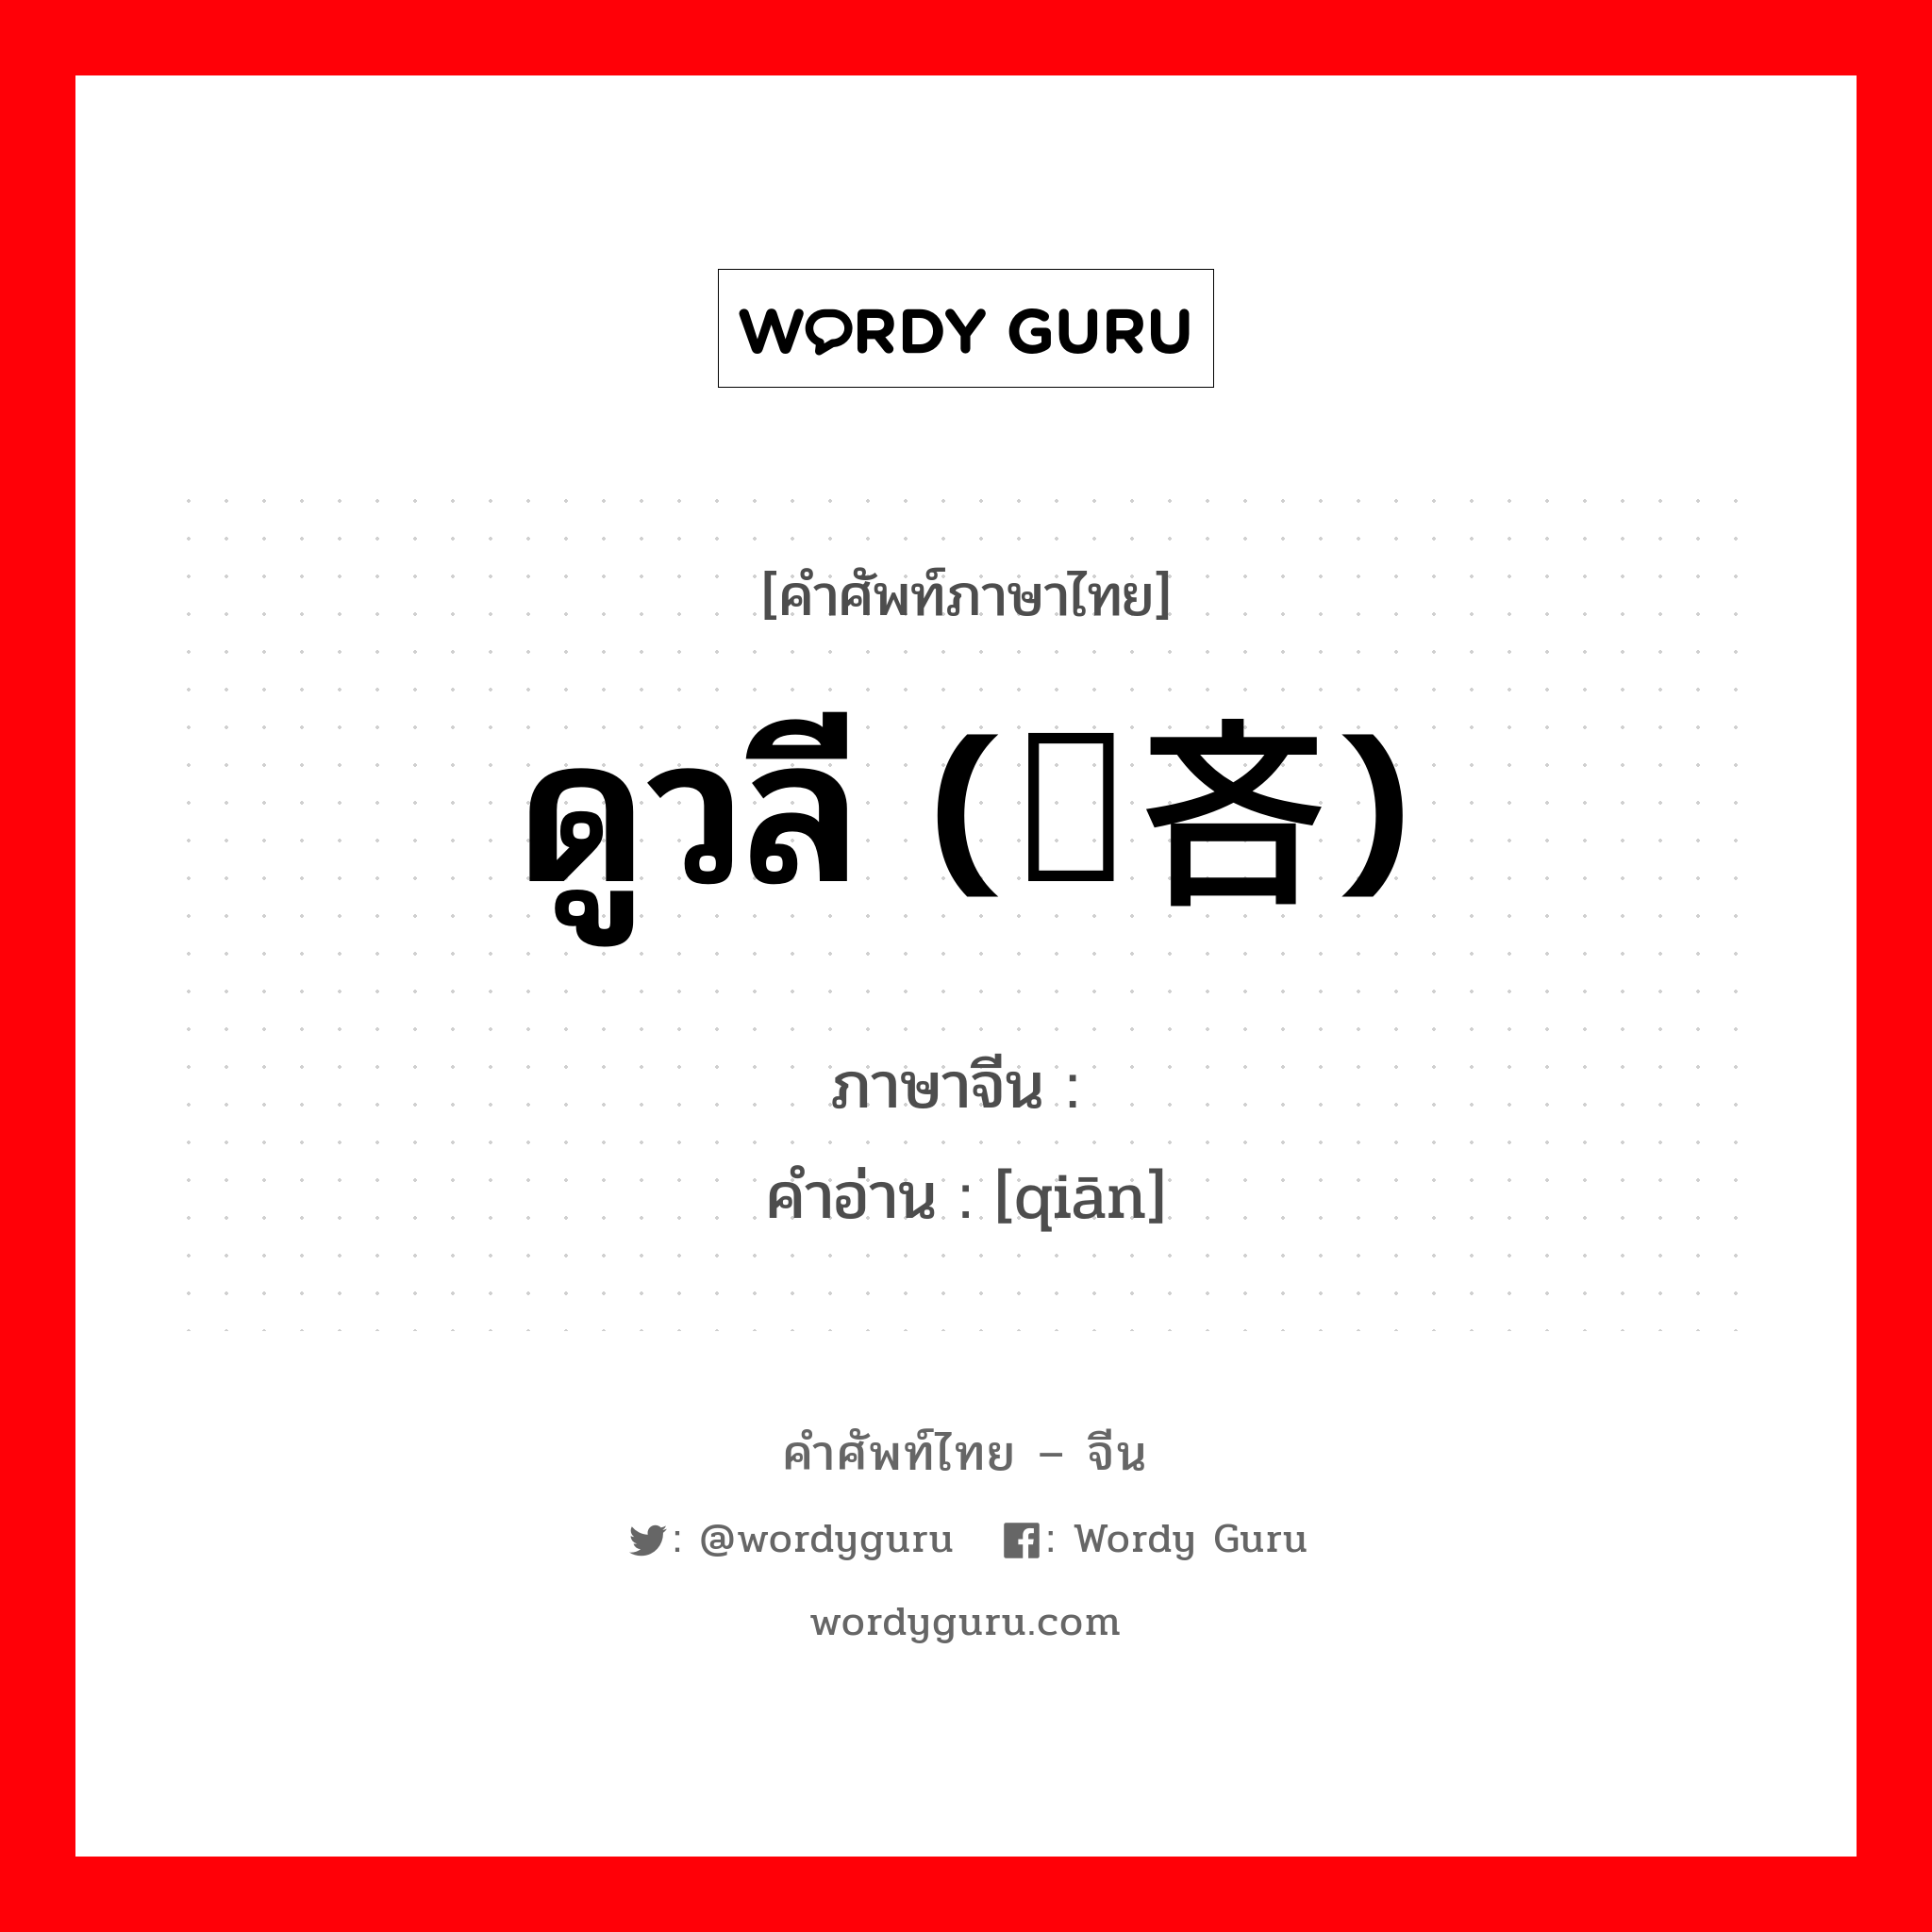 ดูวลี (悭吝) ภาษาจีนคืออะไร, คำศัพท์ภาษาไทย - จีน ดูวลี (悭吝) ภาษาจีน 悭 คำอ่าน [qiān]